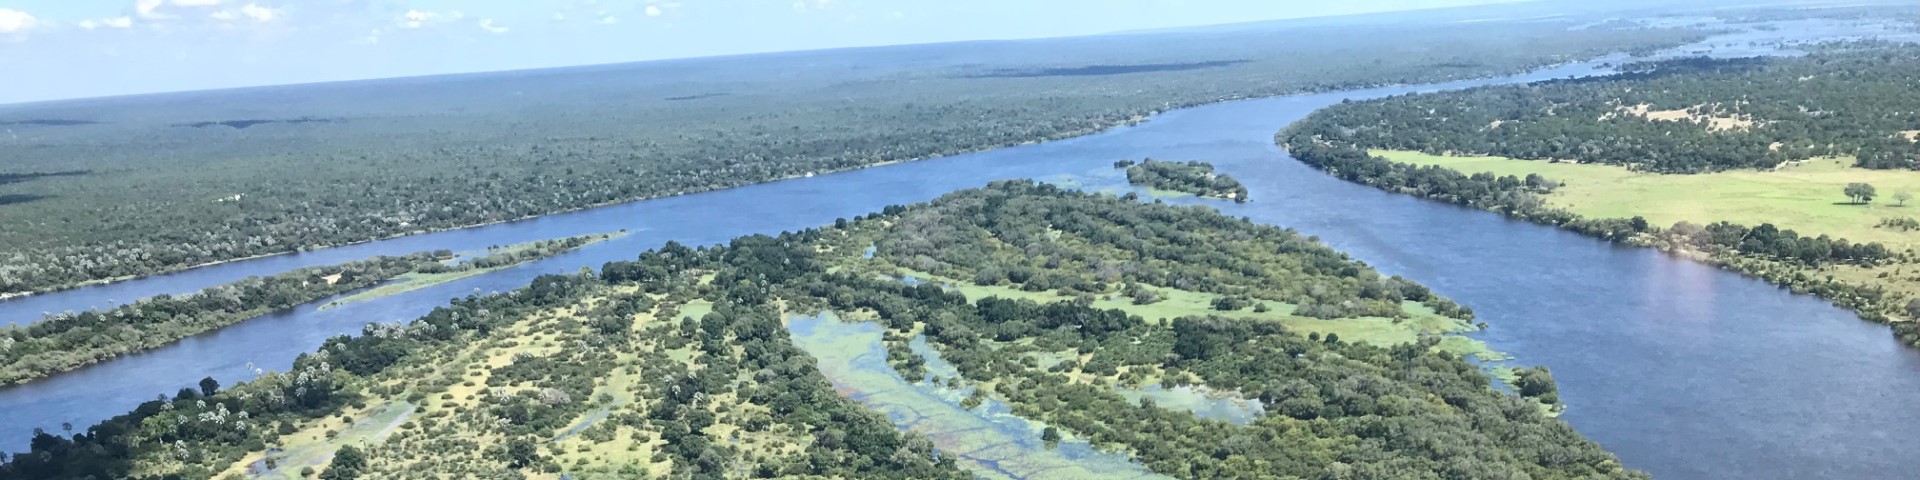 A view of the Zambezi River